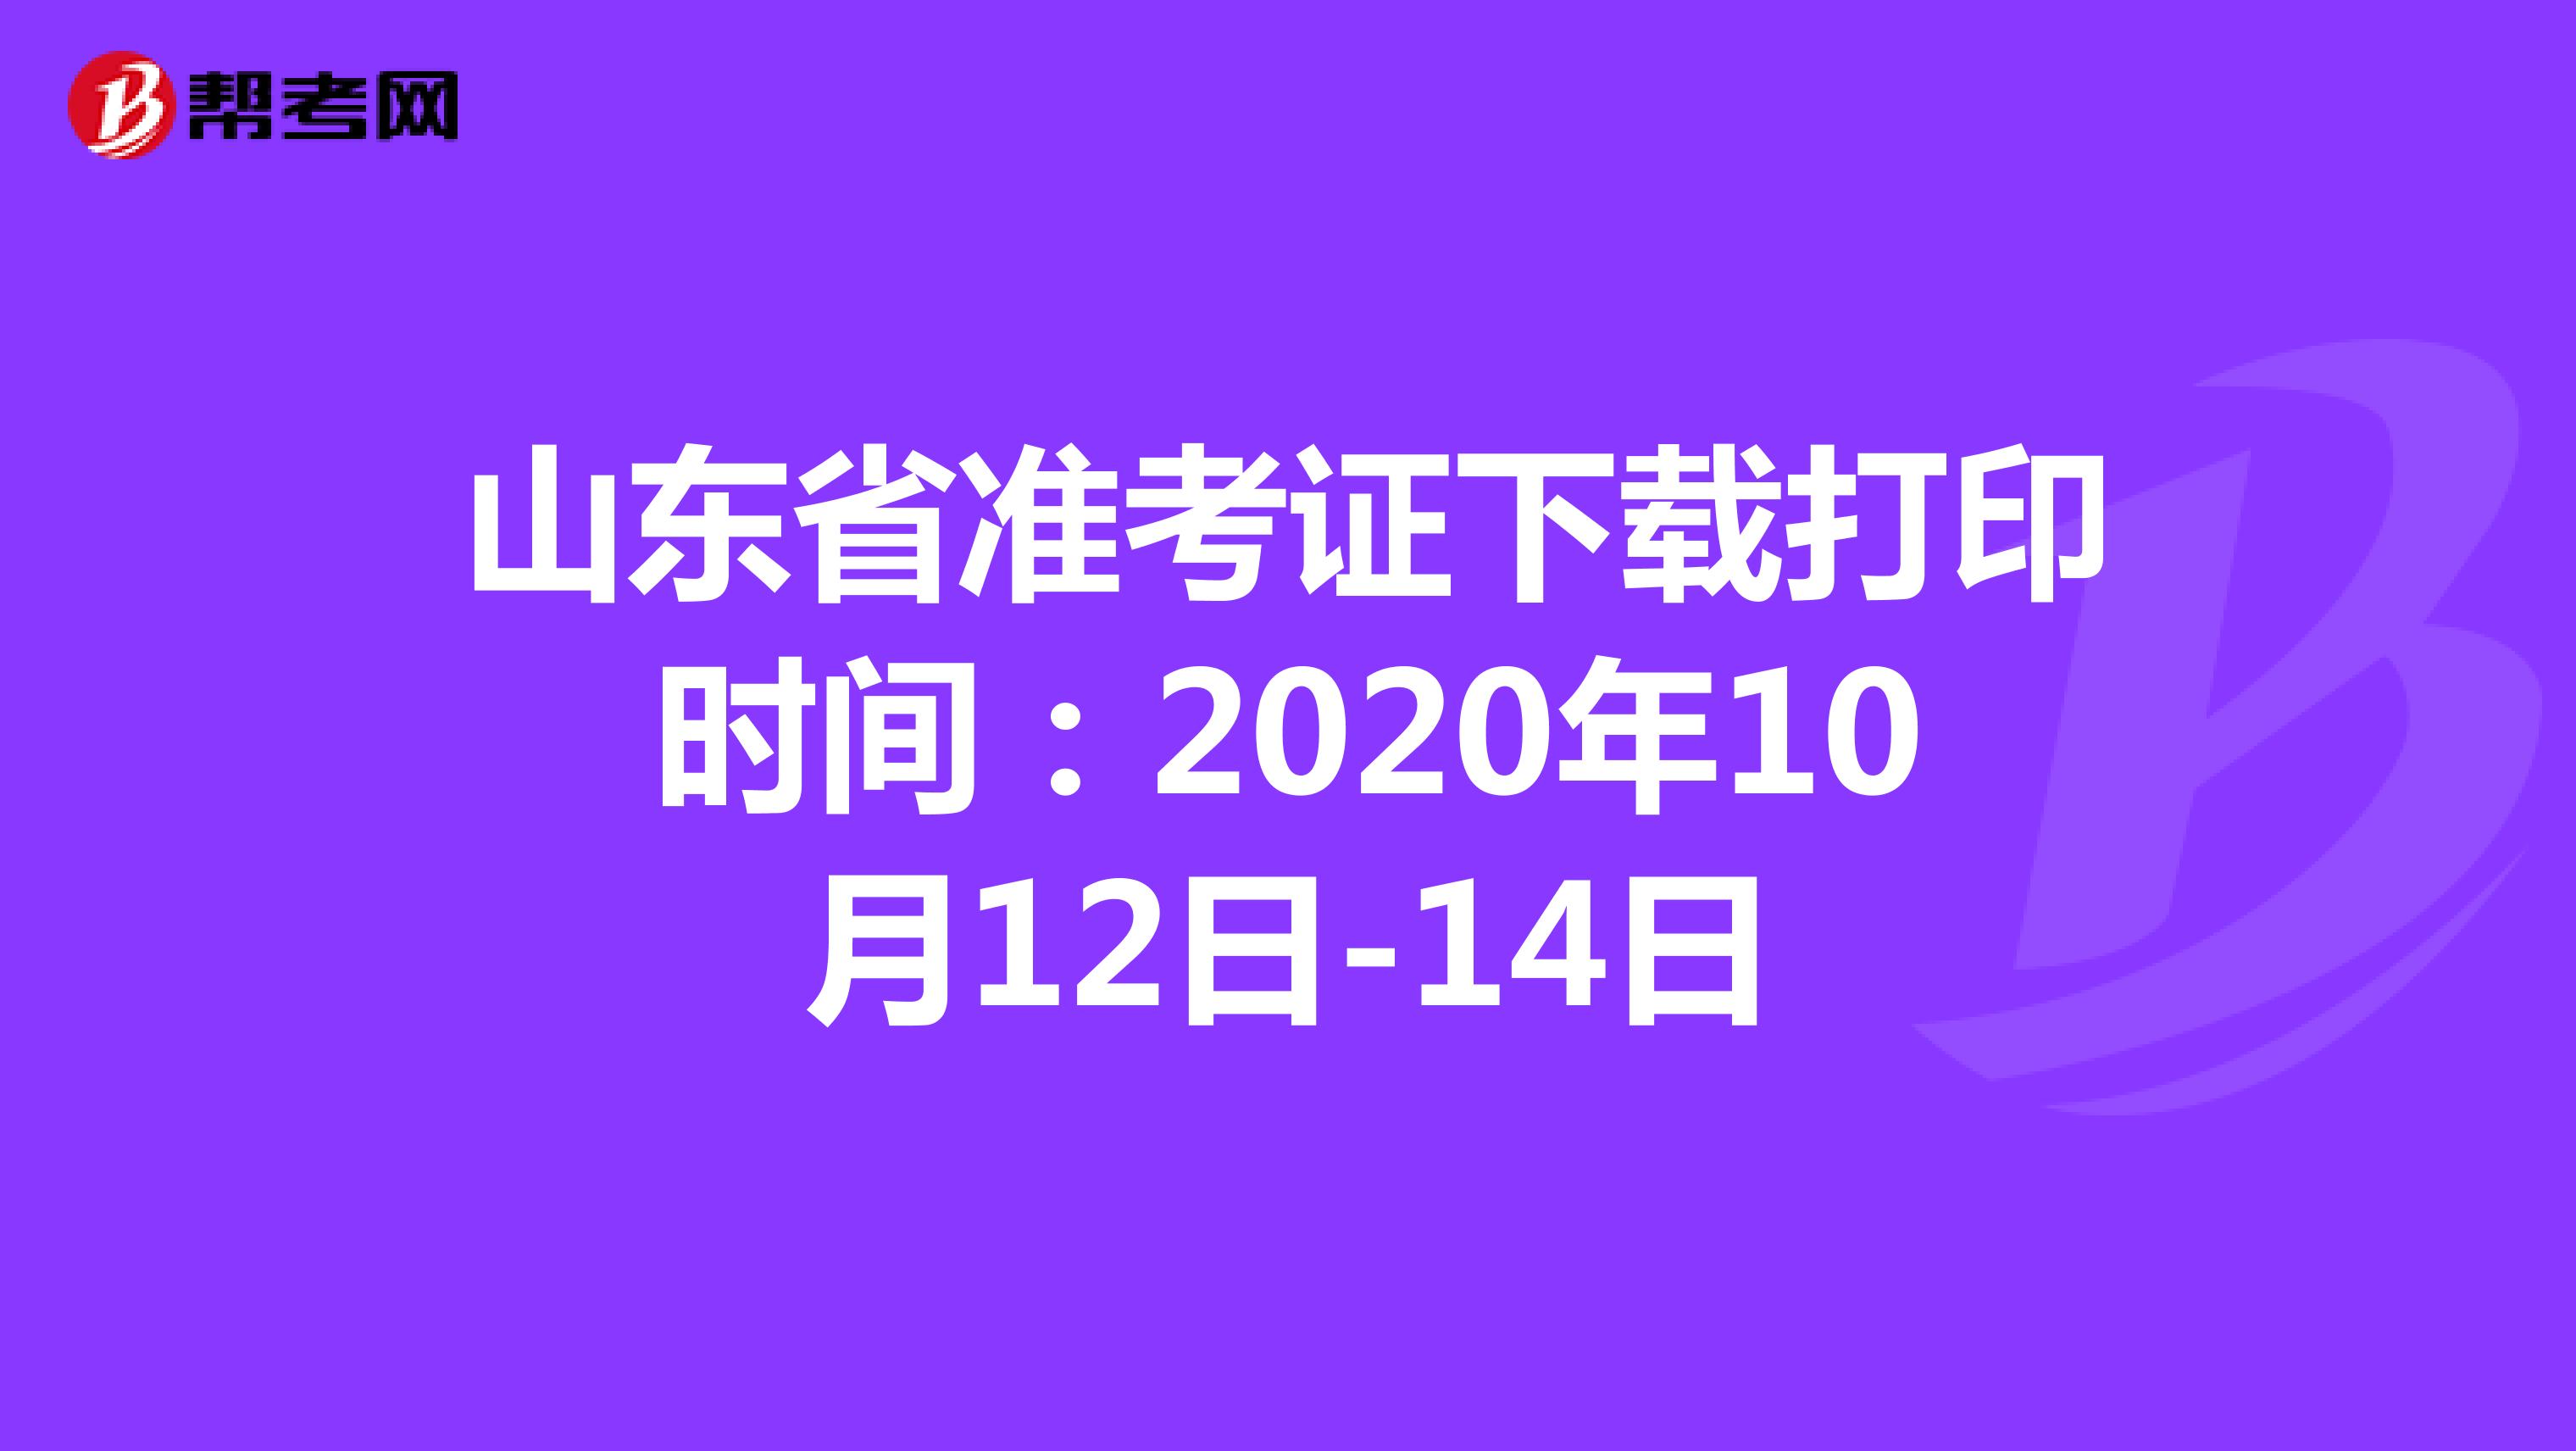 山东省准考证下载打印时间：2020年10月12日-14日